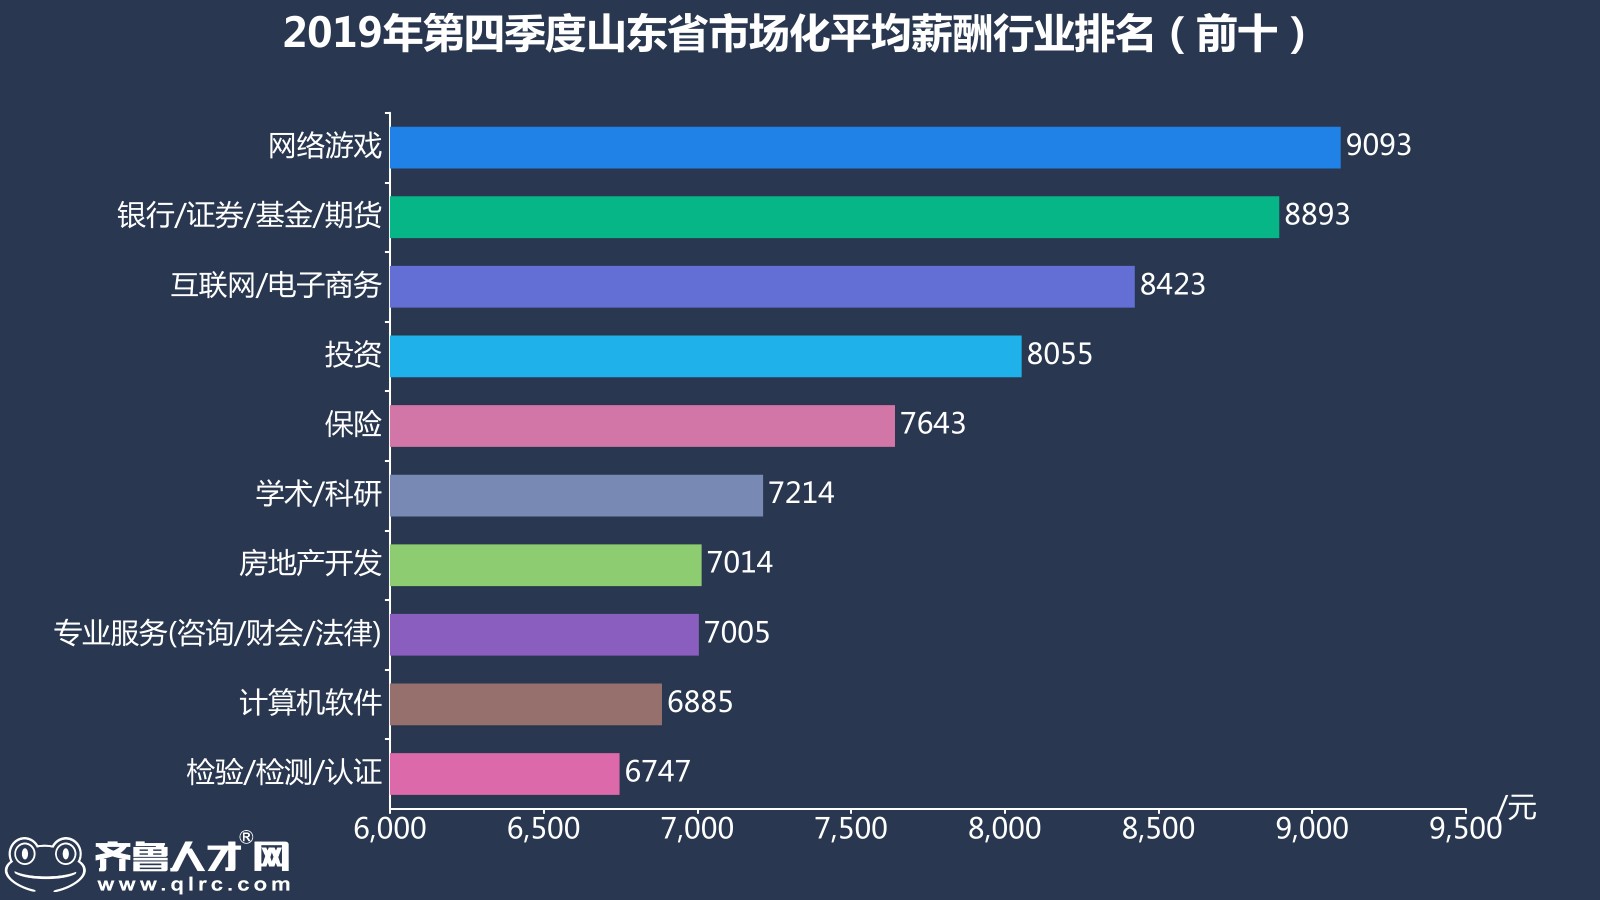 齊魯人才網-2019年山東四季度薪酬數據圖5.jpg